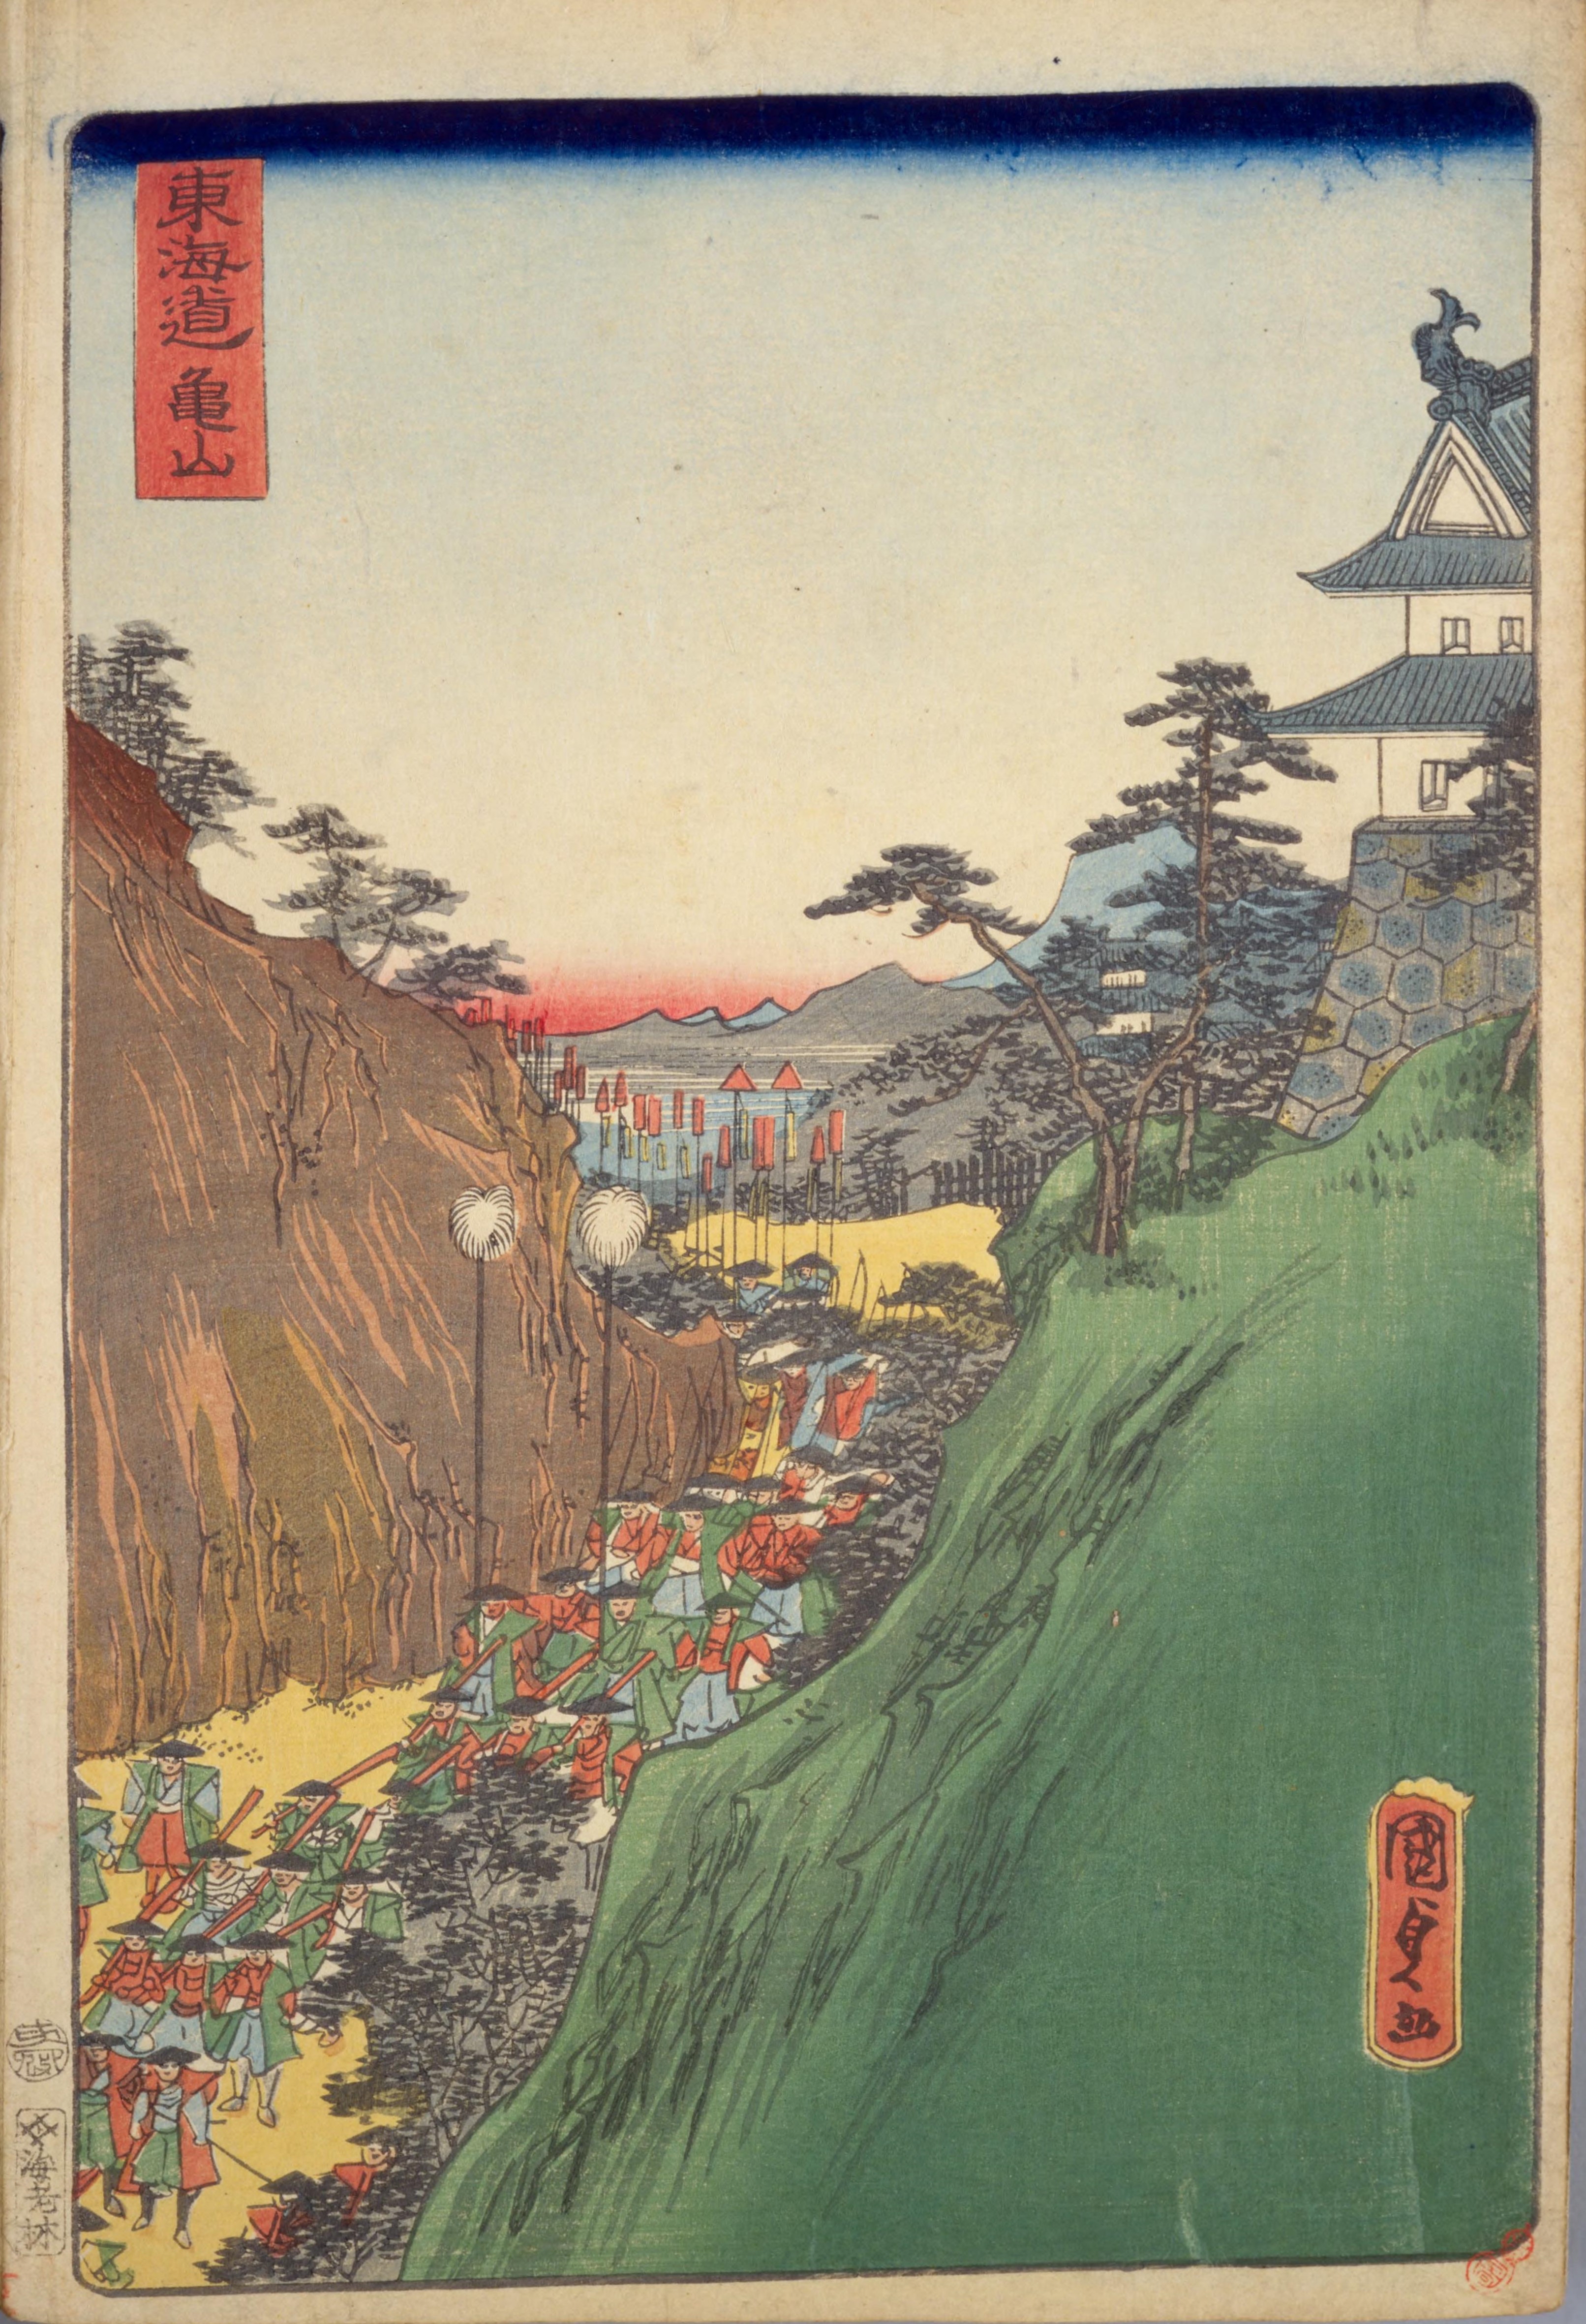 English object has role: ukiyo-e artist